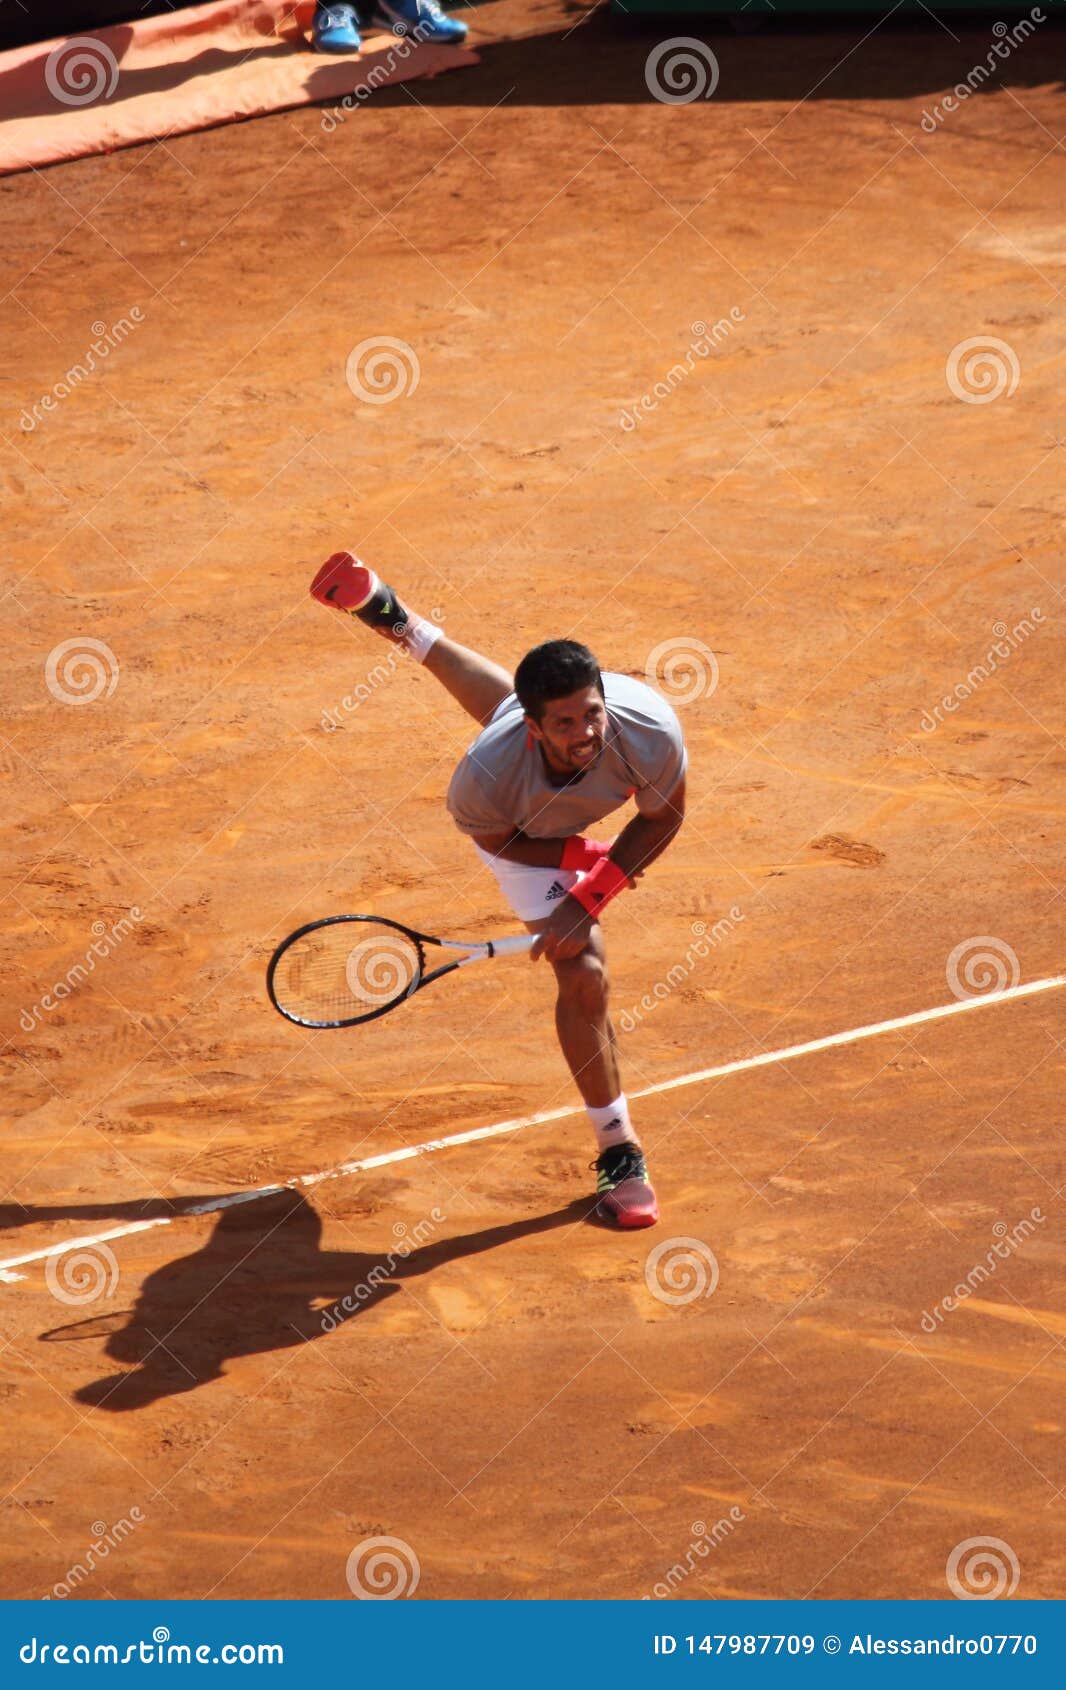 Tennis Rome ATP 2019 - Nadal Vs Verdasco Editorial Stock Image